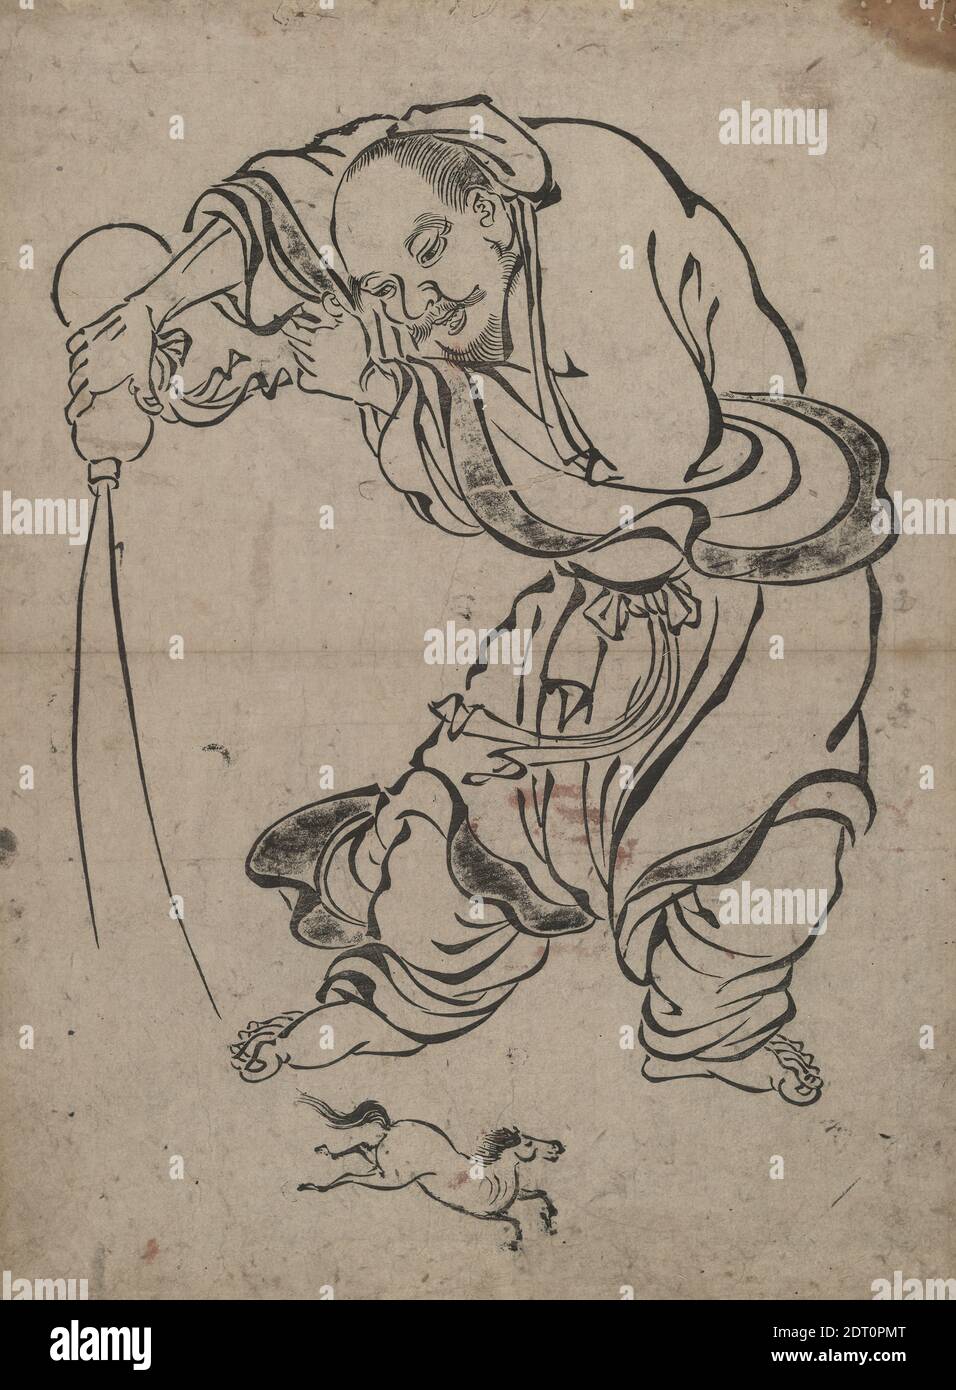 Hersteller, zurückzuführen auf: Kano Schule, Japanisch, Chocaro, einer der acht taoistischen Unsterblichen, 17. Jahrhundert, monochrome Tintenmalerei, sumi-e, Blatt: 16 × 11 5/8 in. (40.6 × 29.5 cm), Japan, Japanisch, Edo-Zeit (1615–1868), Arbeiten auf Papier - Drucke Stockfoto